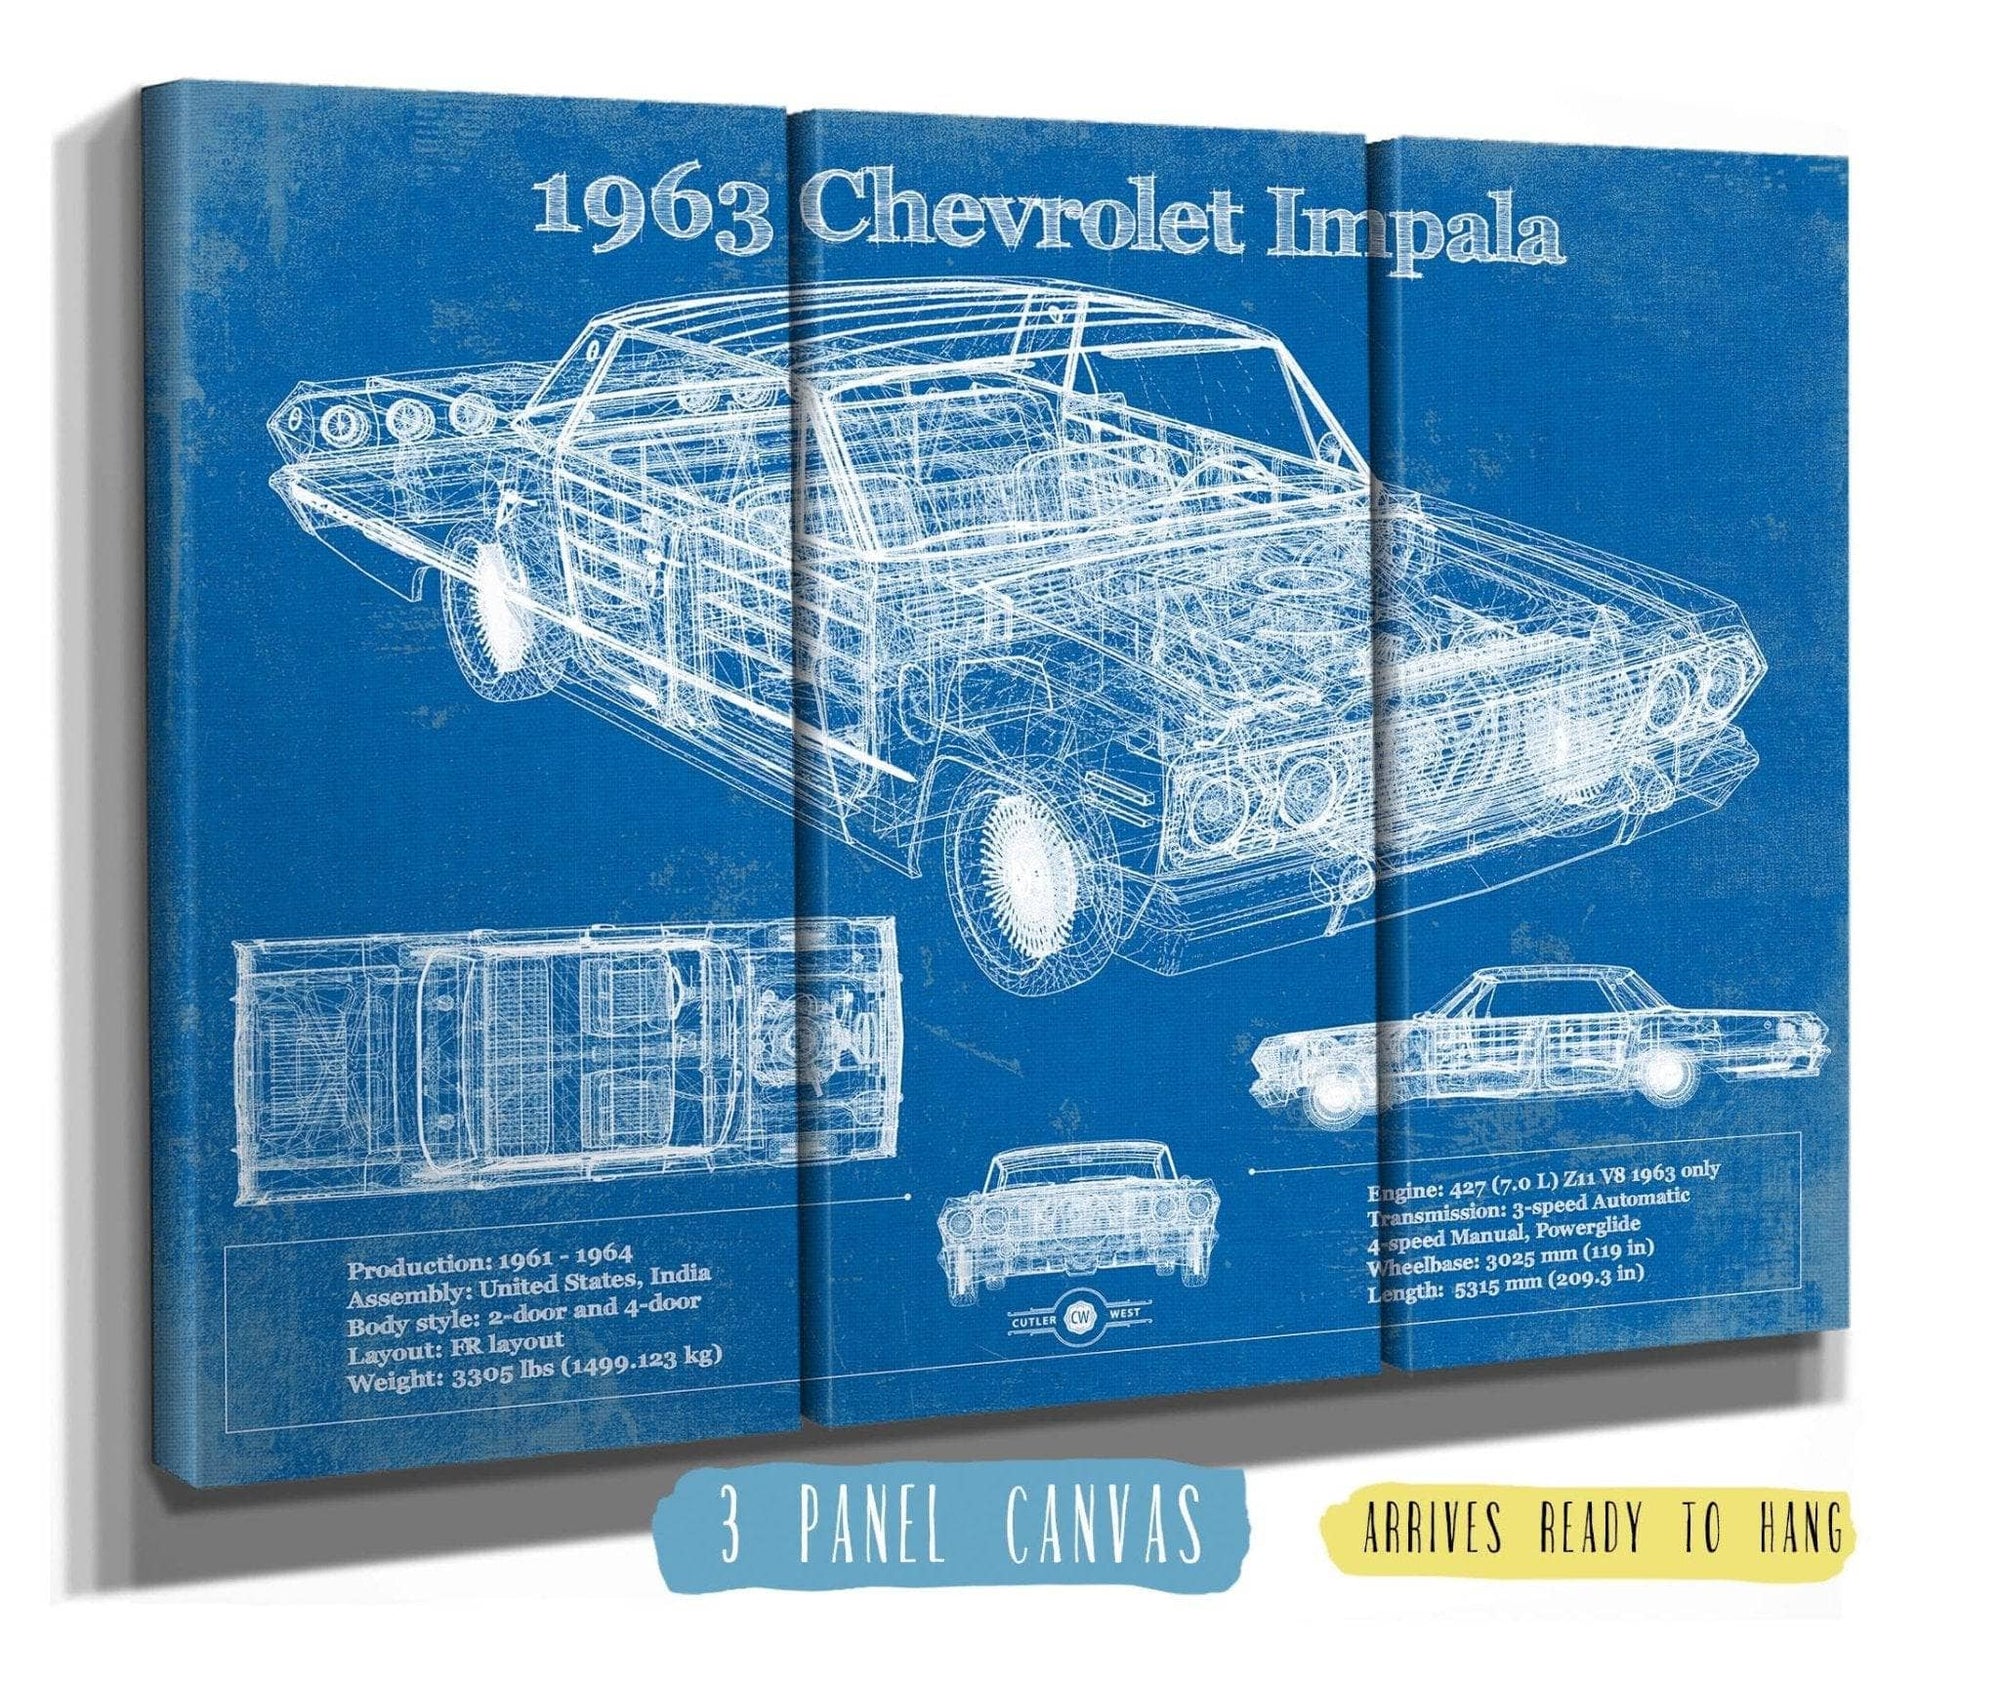 Cutler West Chevrolet Collection 48" x 32" / 3 Panel Canvas Wrap 1963 Chevrolet Impala Blueprint Vintage Auto Print 933311328